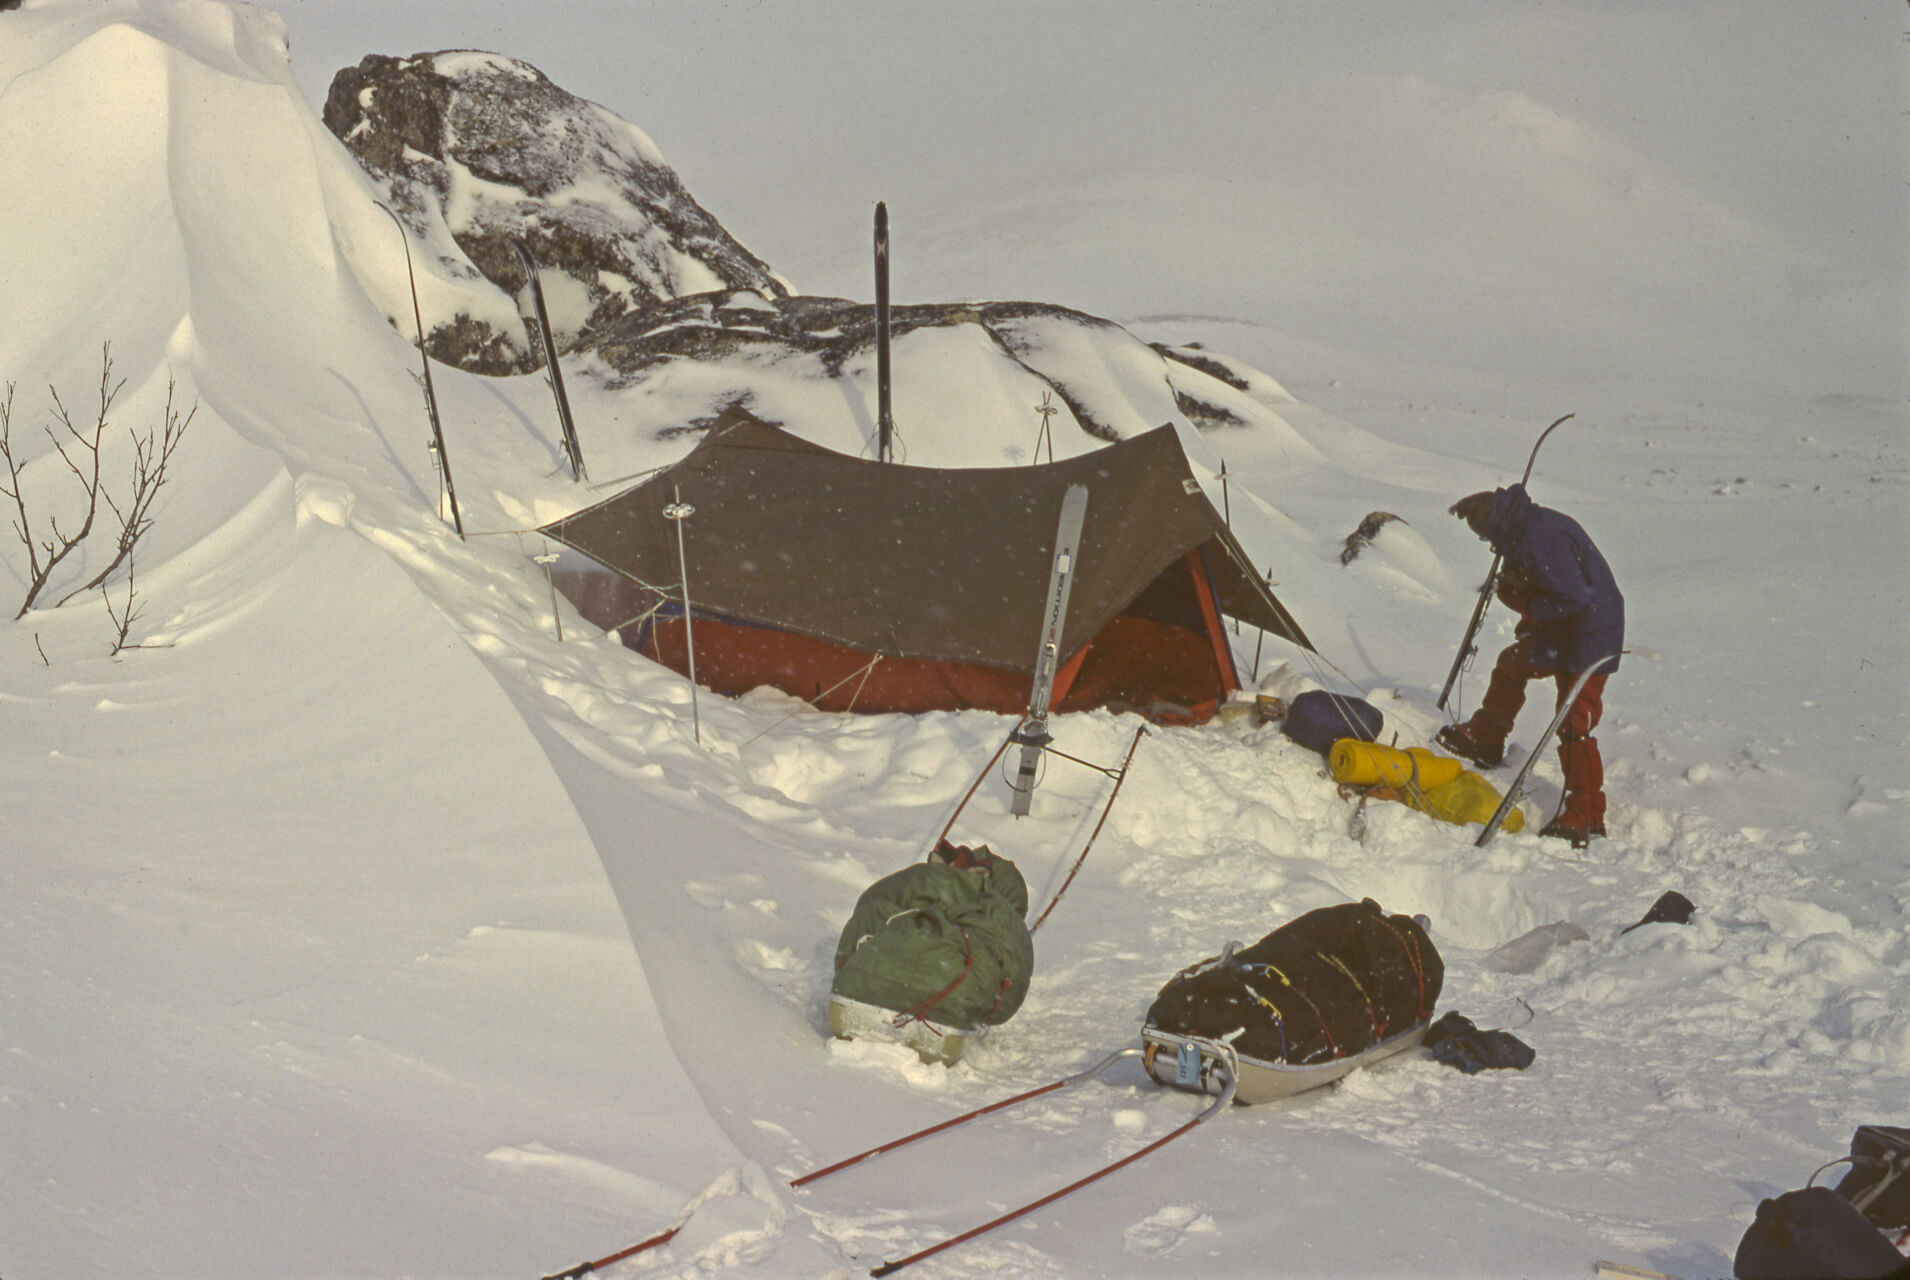 Camp avec pulka près du lac d'Akka. Dernière année des tentes canadiennes inversées. 22 avril 1981